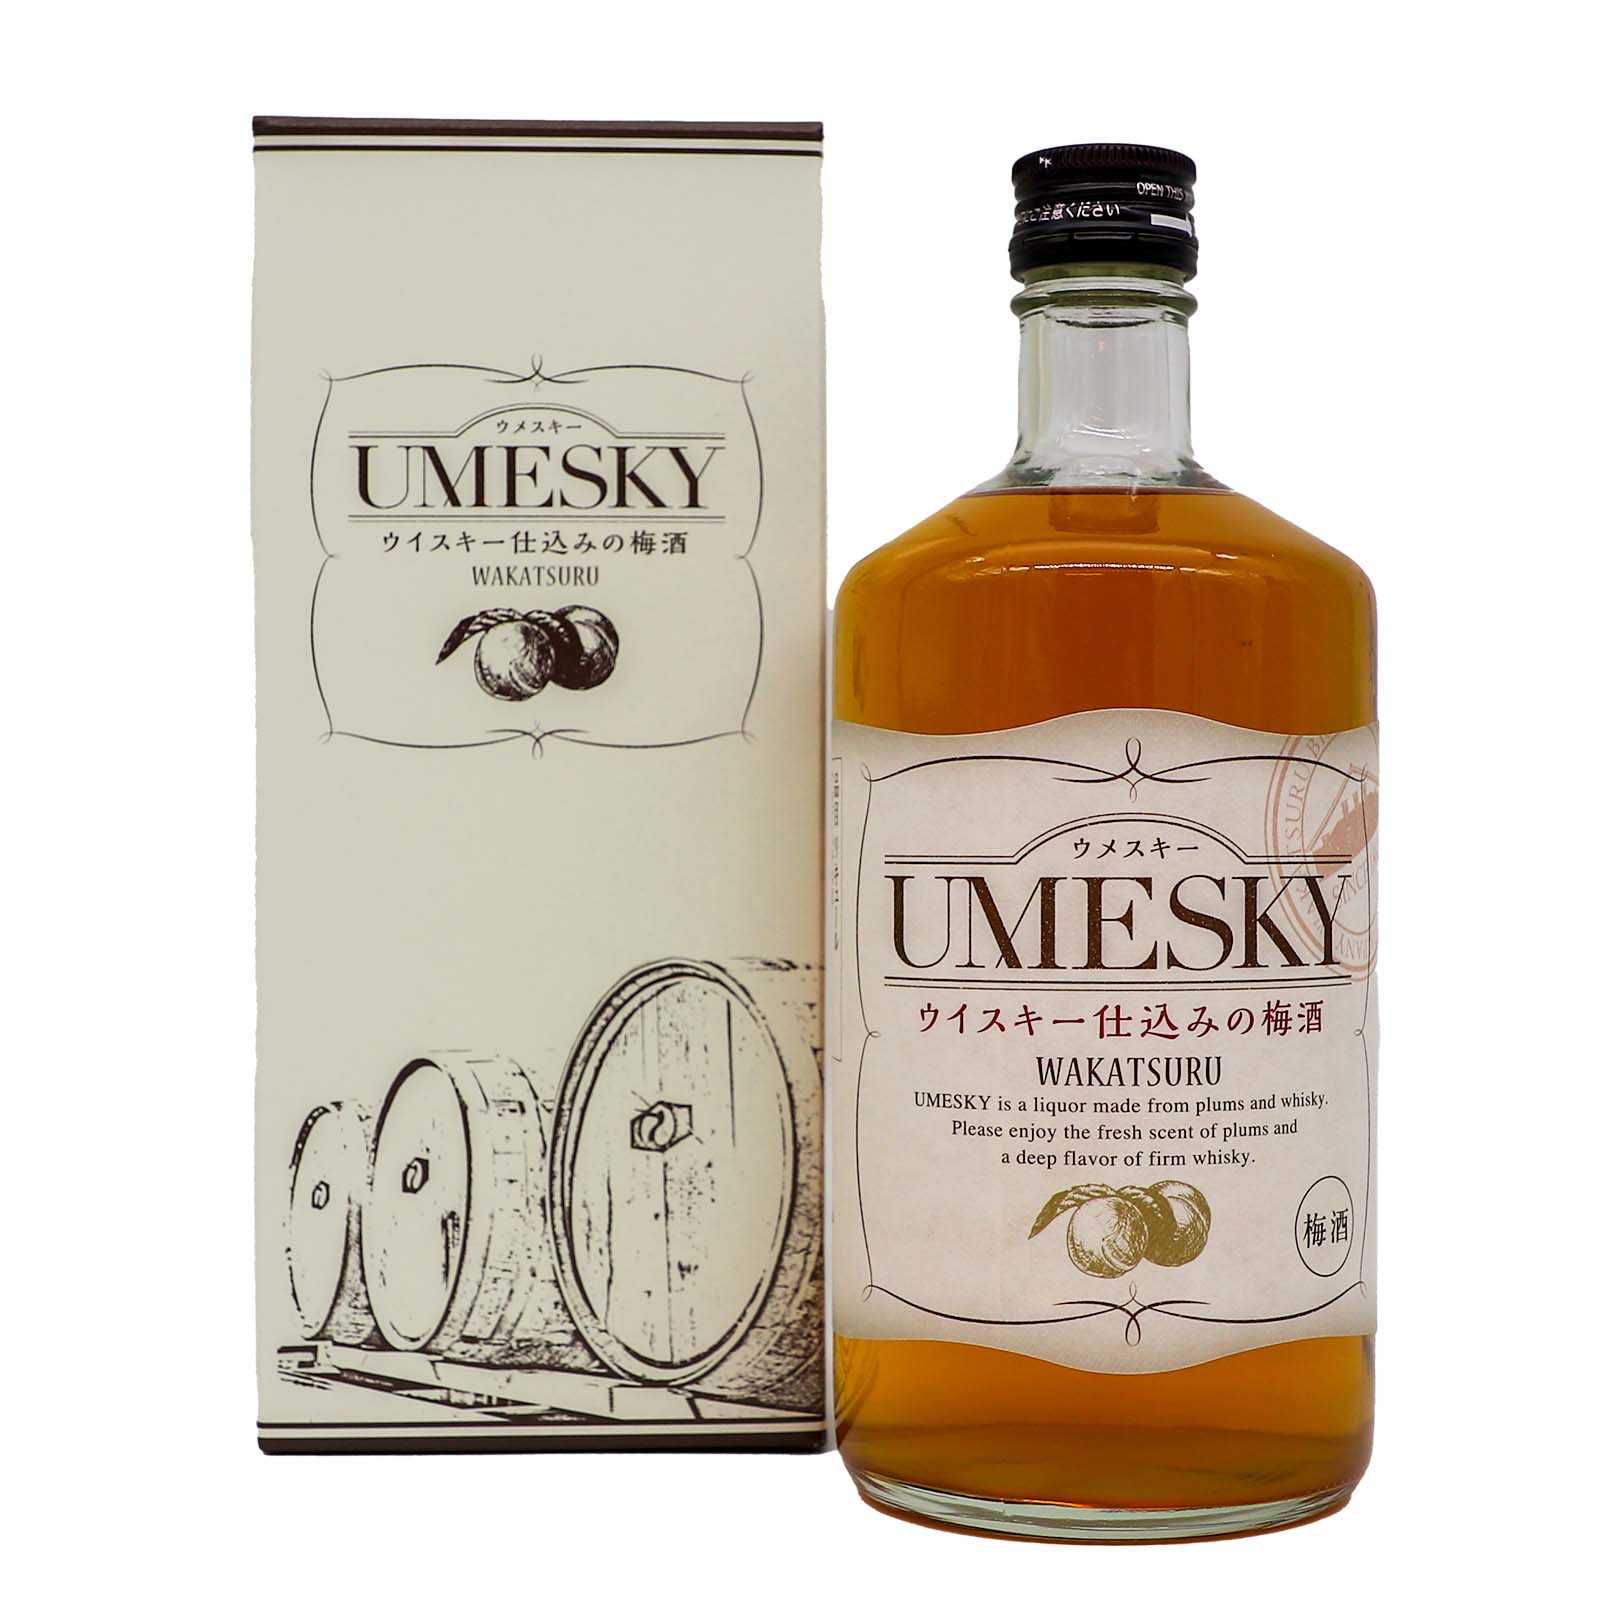 Wakatsuru Umesky Umeshu with Whisky Plum Wine Liqueur 720ml